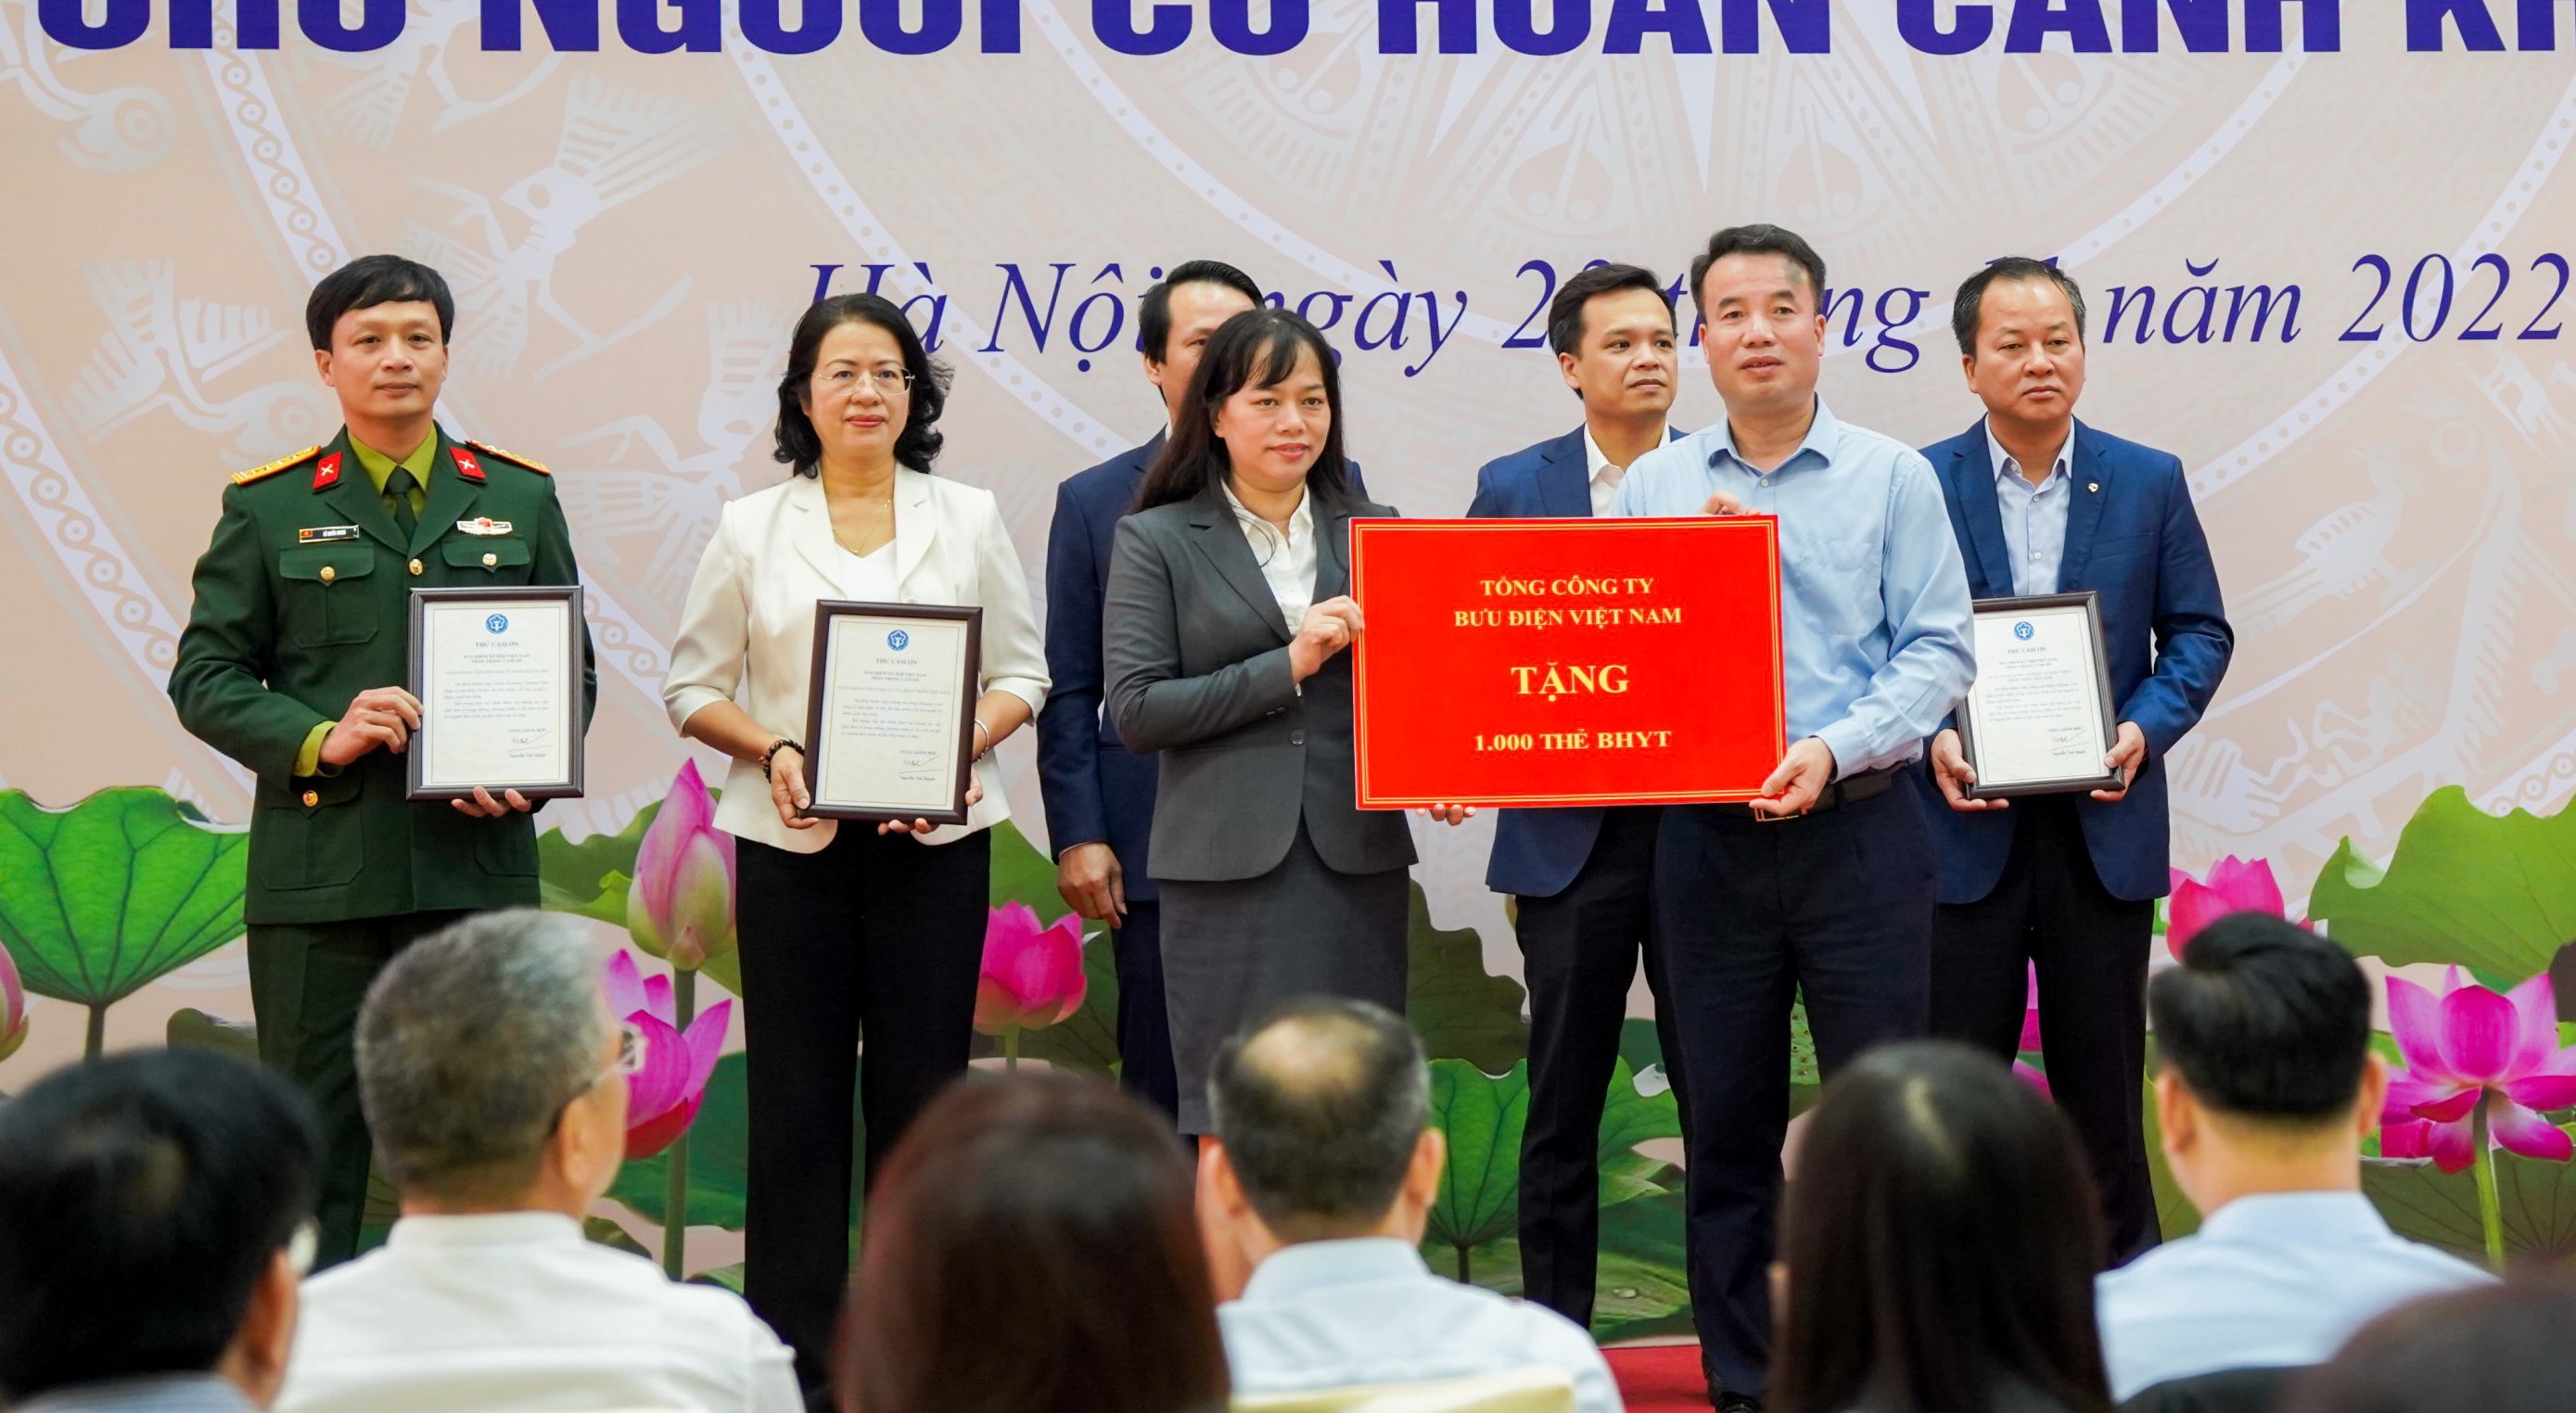 Vietnam Post tặng 1.000 thẻ BHYT cho người có hoàn cảnh khó khăn